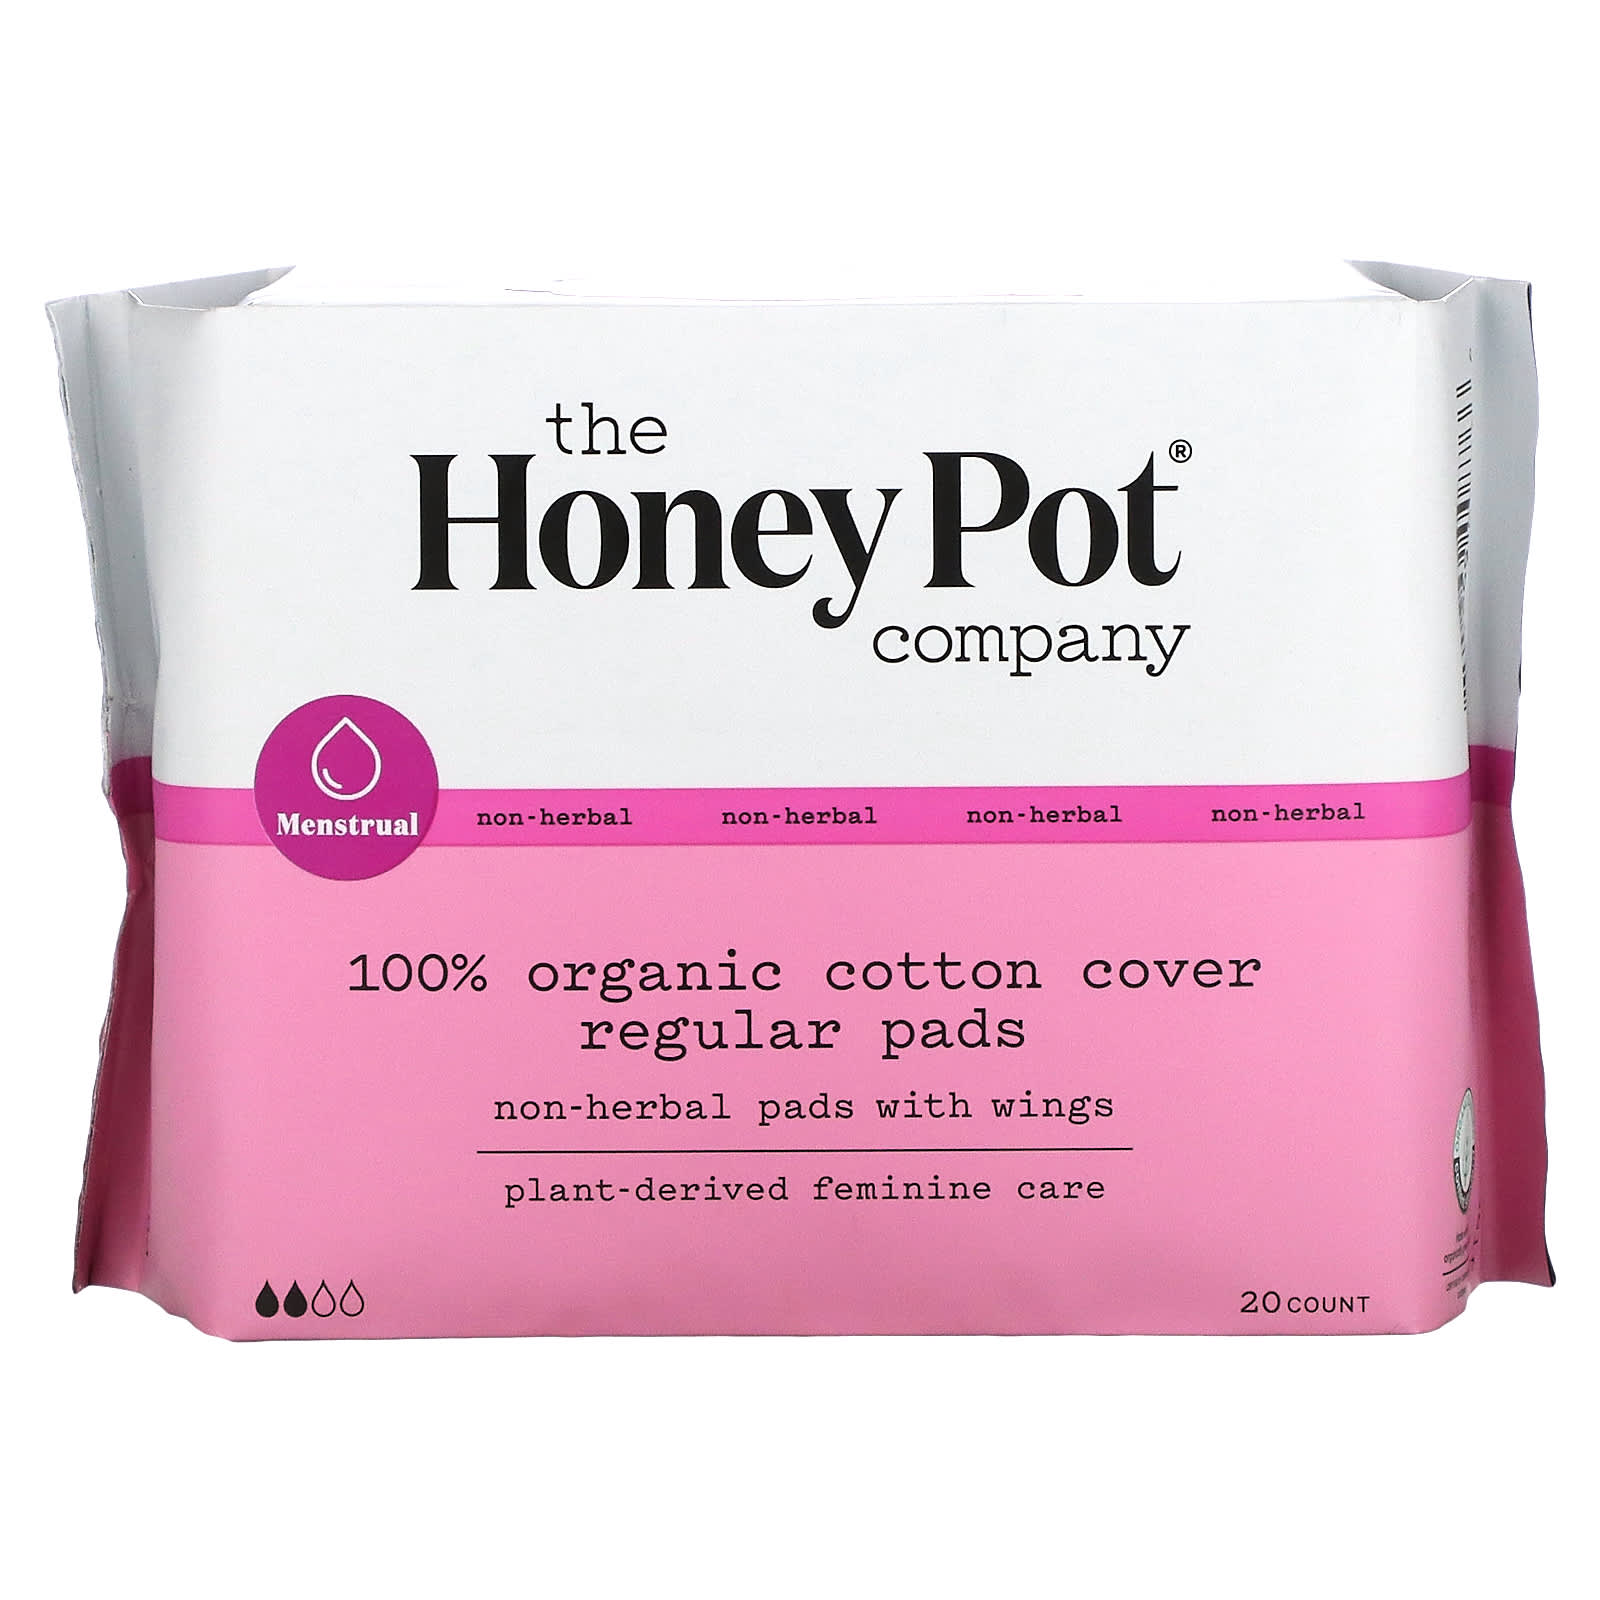 the honey pot company растительные менструальные прокладки дорожный набор 3 шт Regular, органические прокладки с крылышками, не на травяной основе, 20 шт. The Honey Pot Company